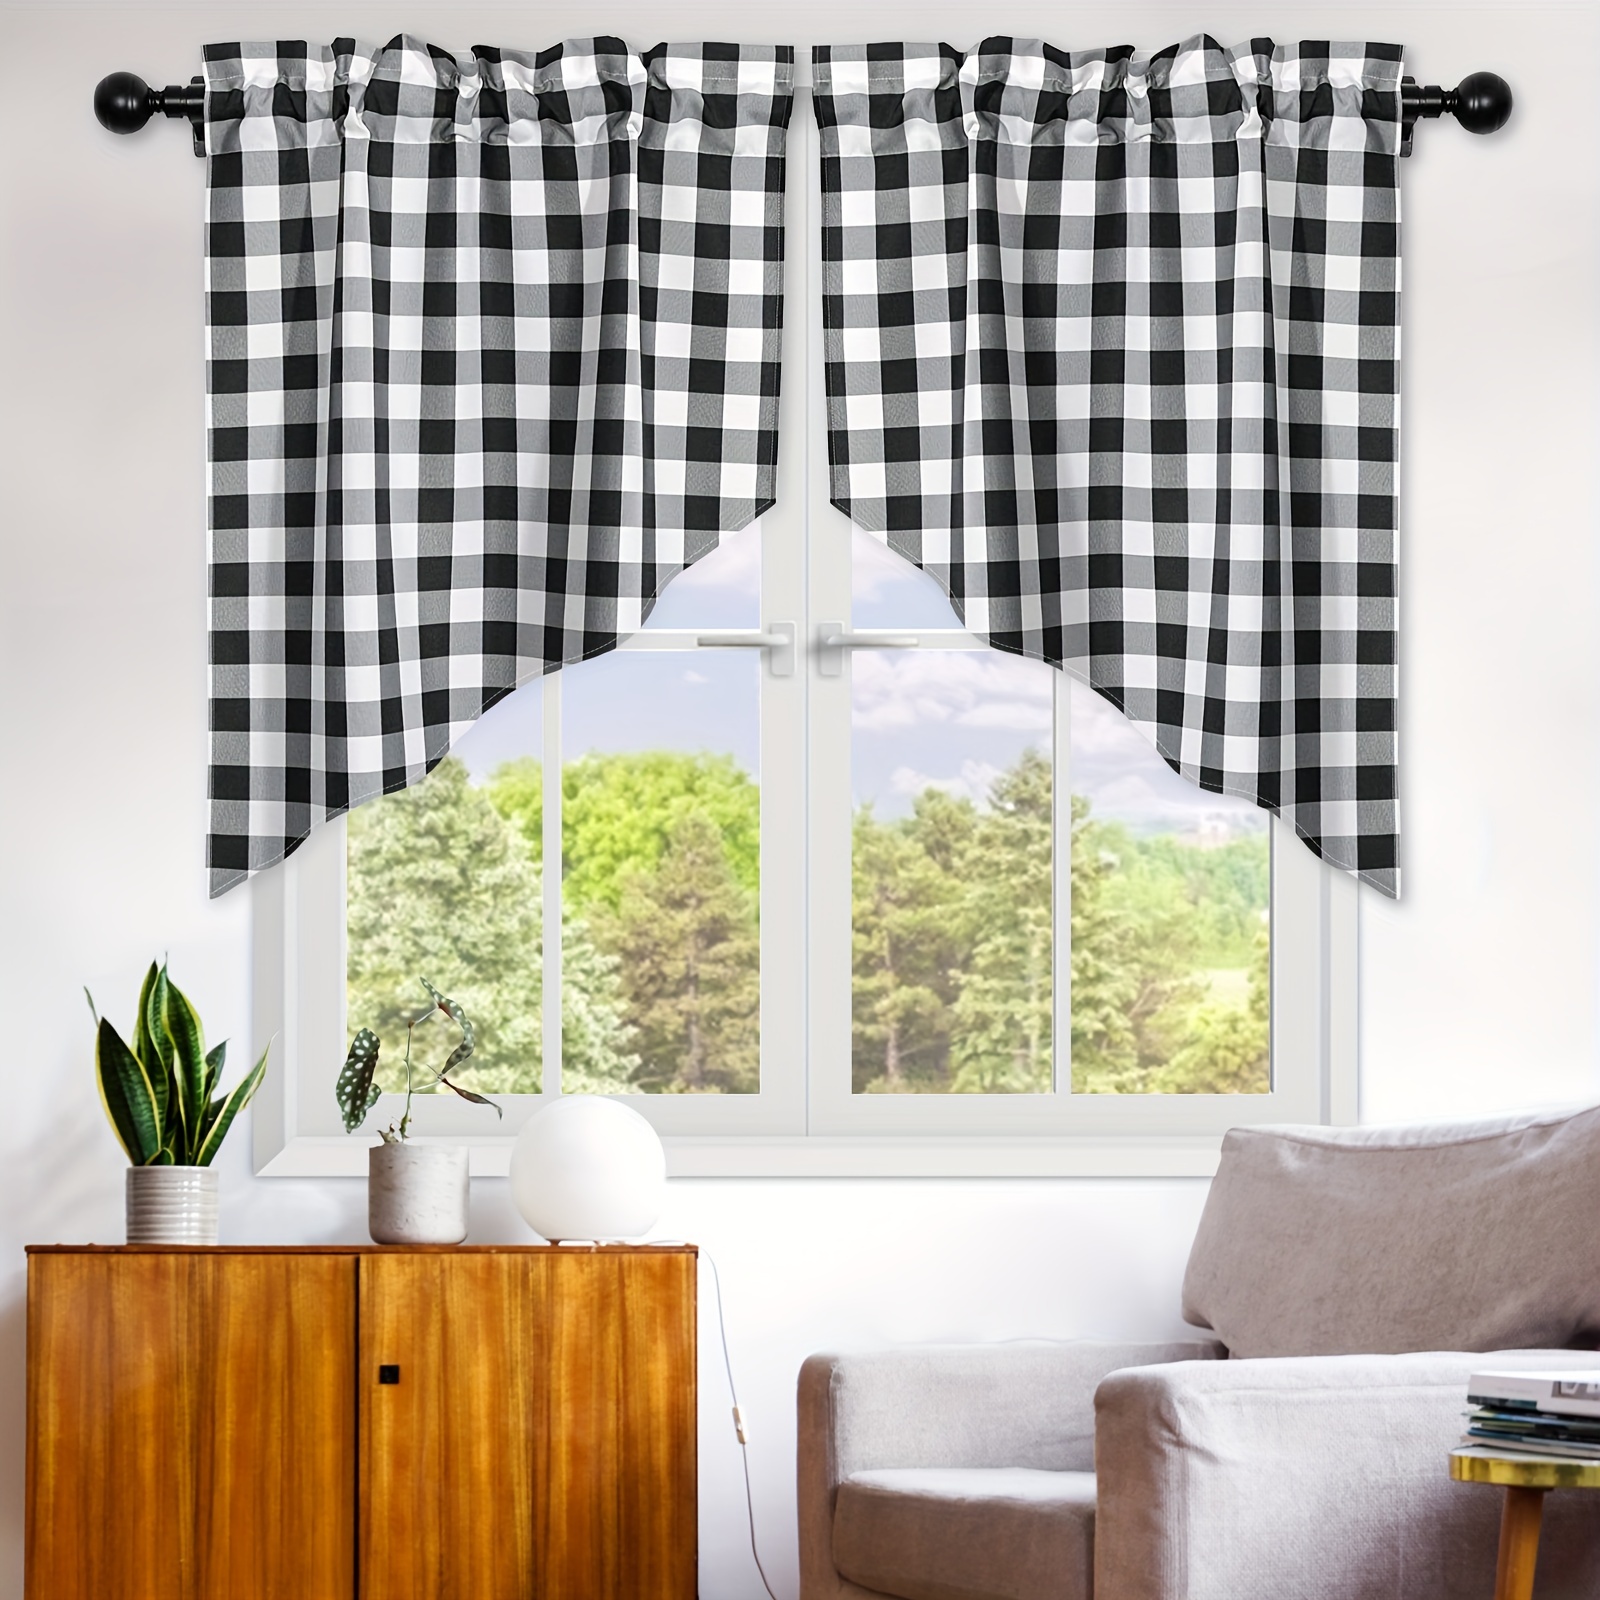  Cenefa de cortina para decoración de ventana, bolsillo para  barra, cortinas cortas con panel de calabaza de granja de otoño a cuadros  blancos y negros, cortinas de tratamiento de ventana para